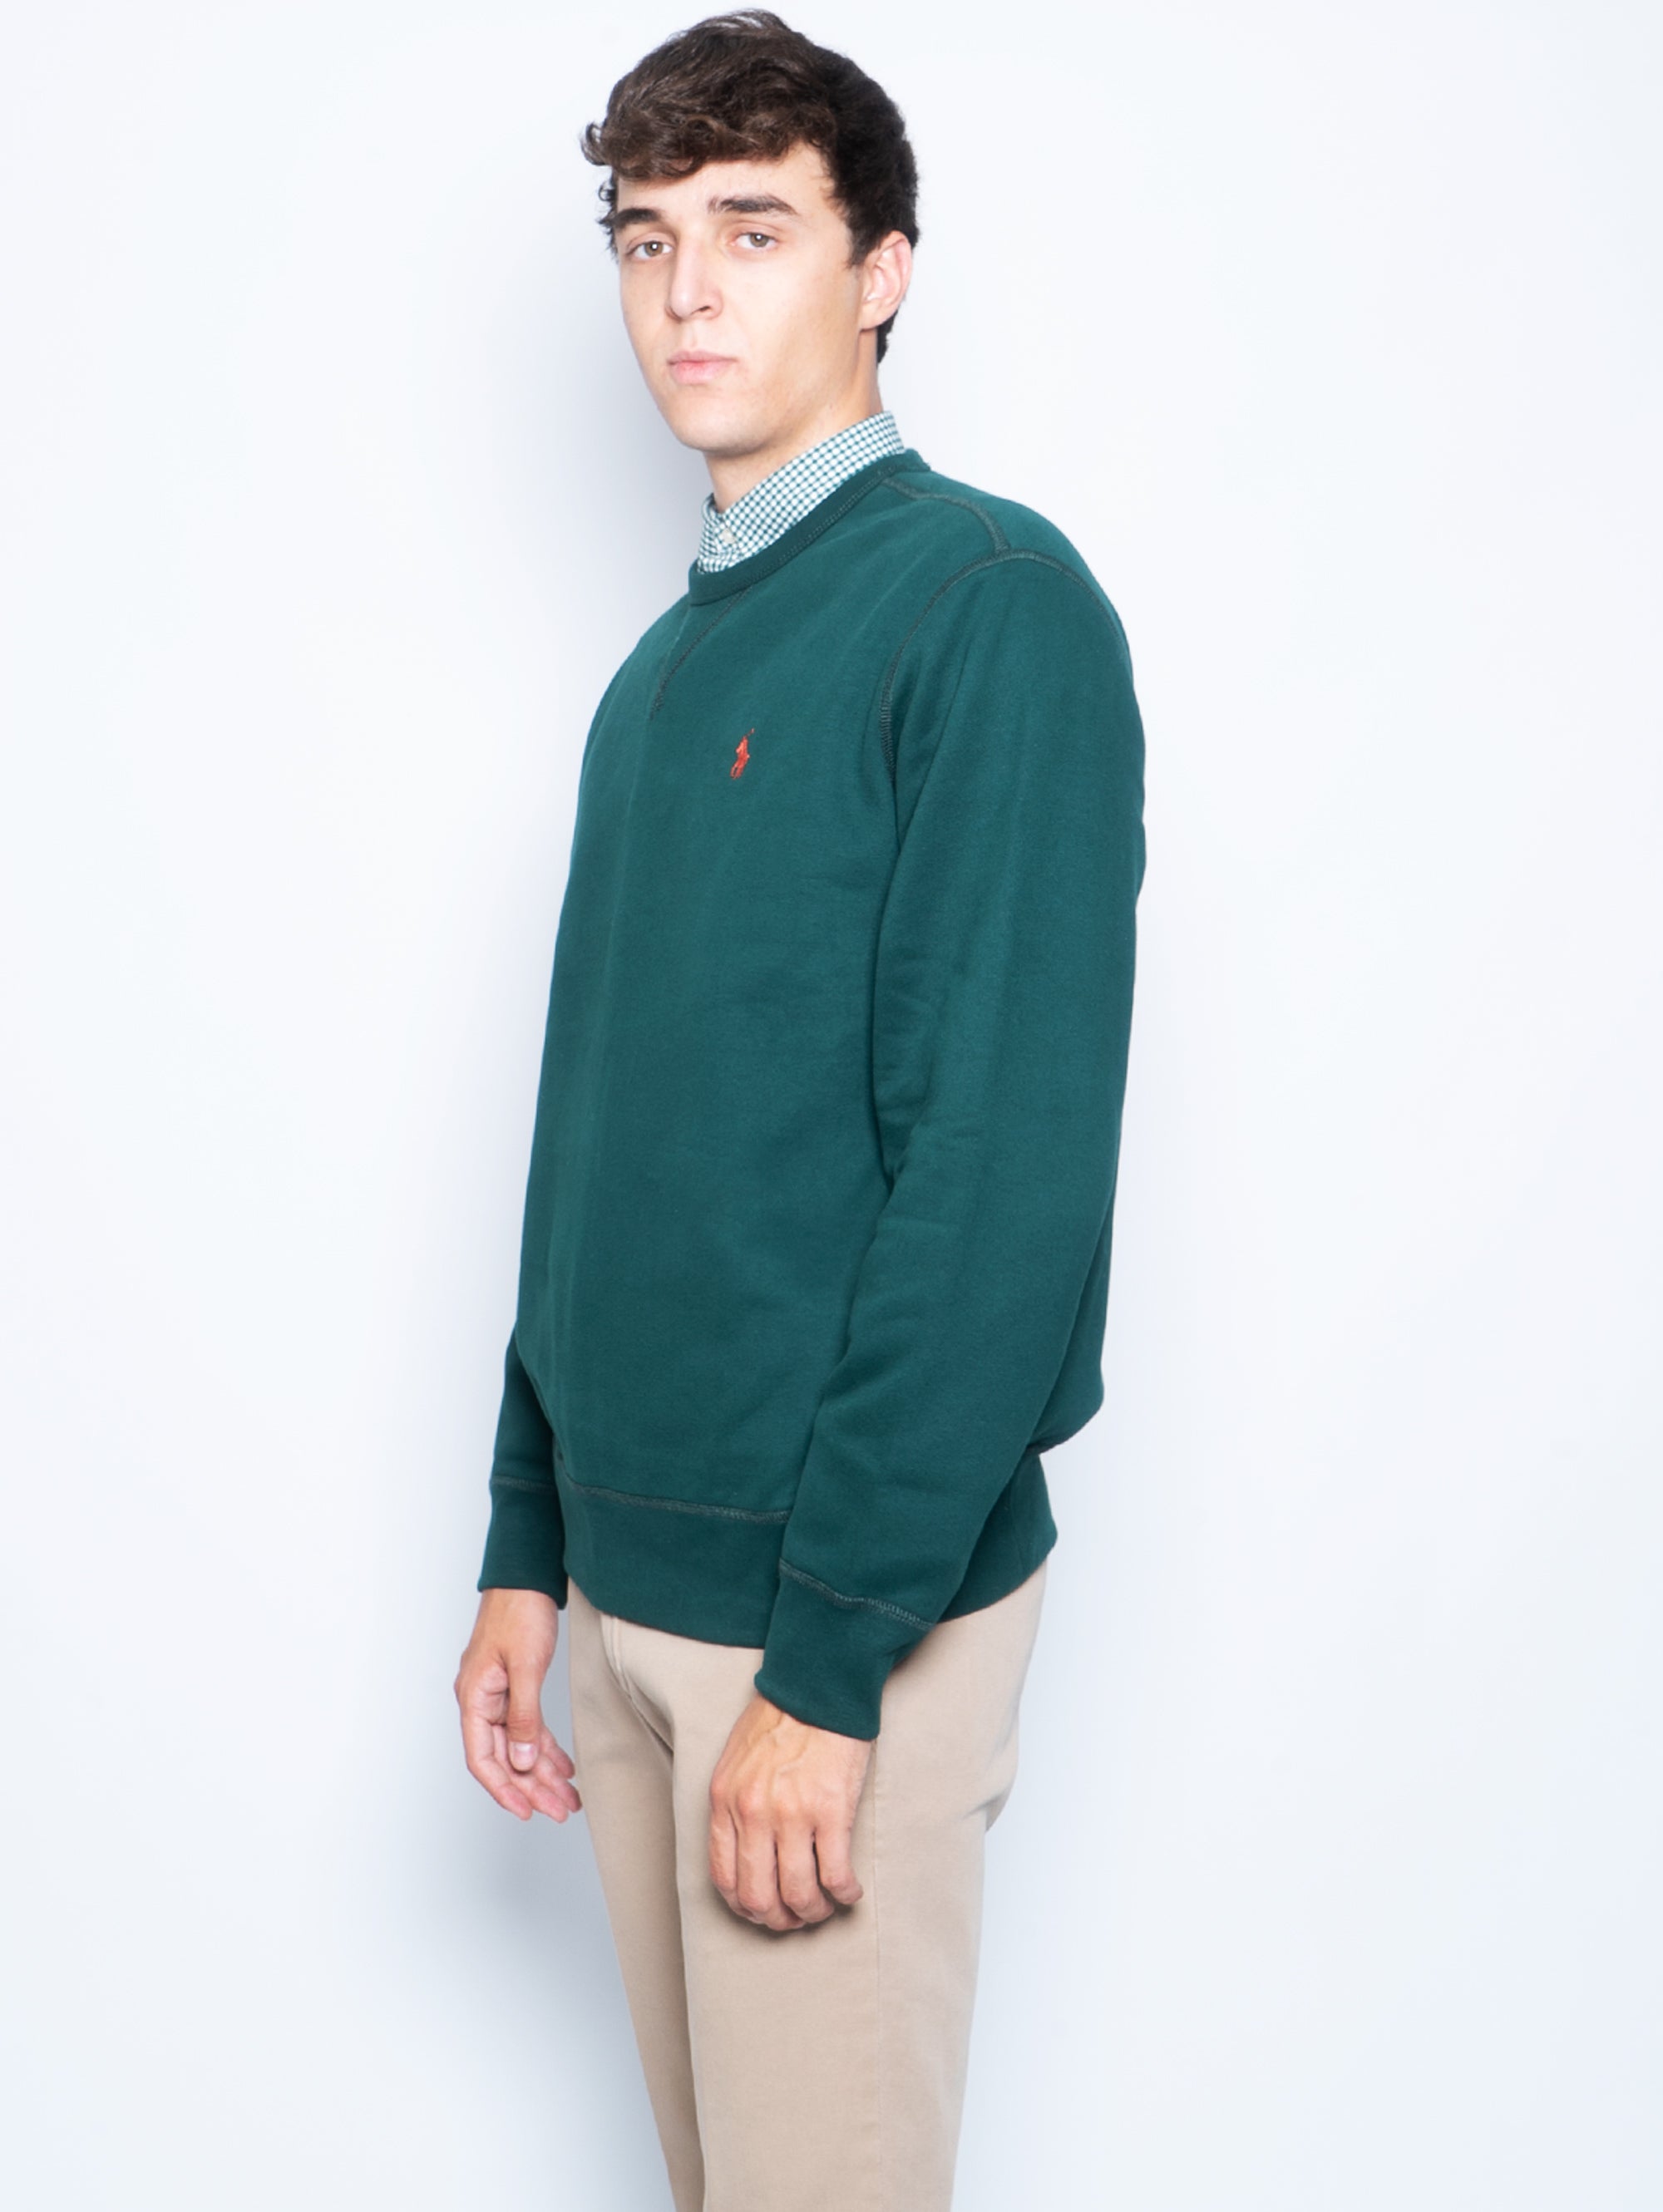 Sweatshirt mit Rundhalsausschnitt und grünem V-Einsatz